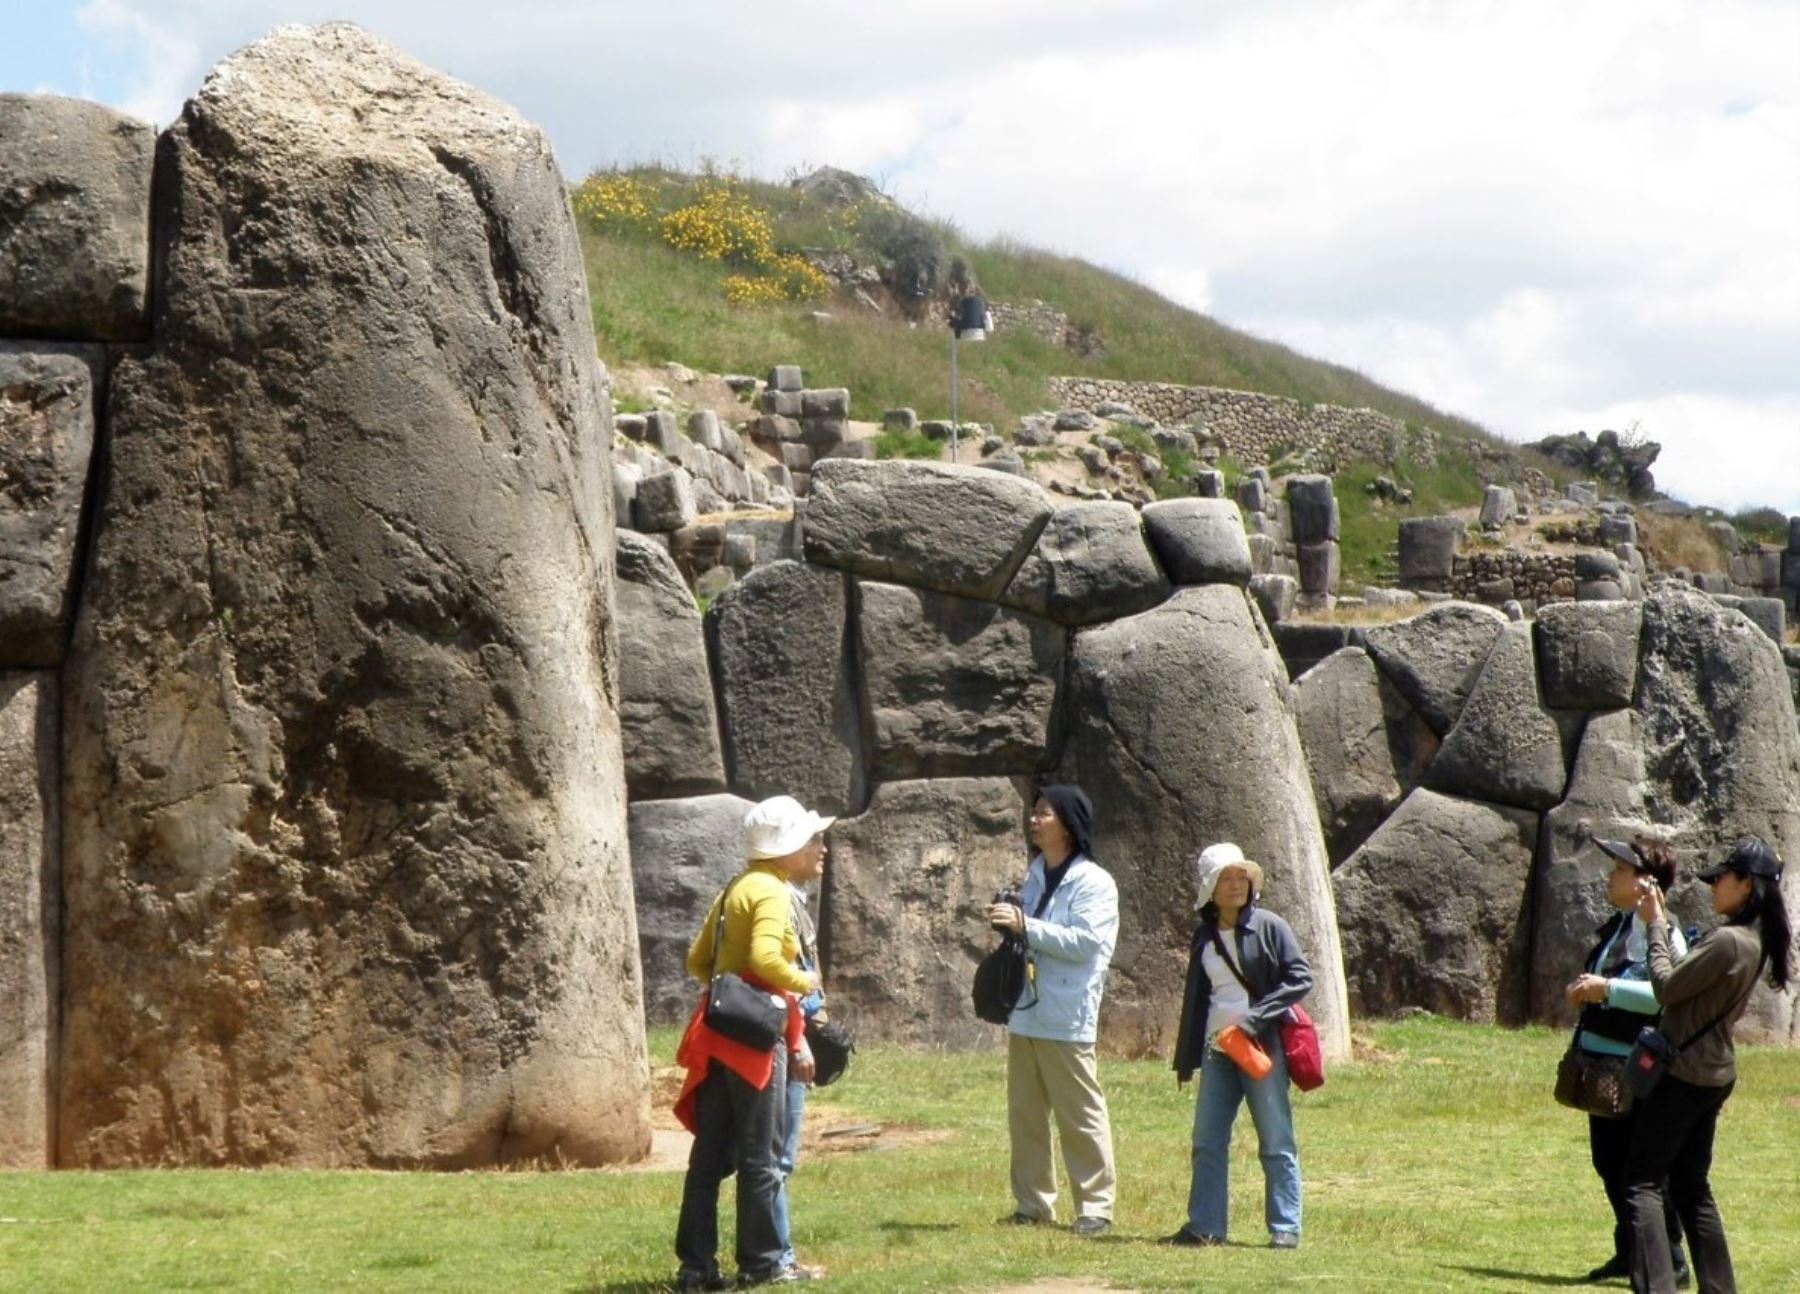 Los peruanos podrán conocer Sacsayhuamán, Ollantaytambo, Pisaq y otros parques arqueológicos de Cusco pagando solo S/ 40 por el boleto turístico. Foto: Percy Hurtado.